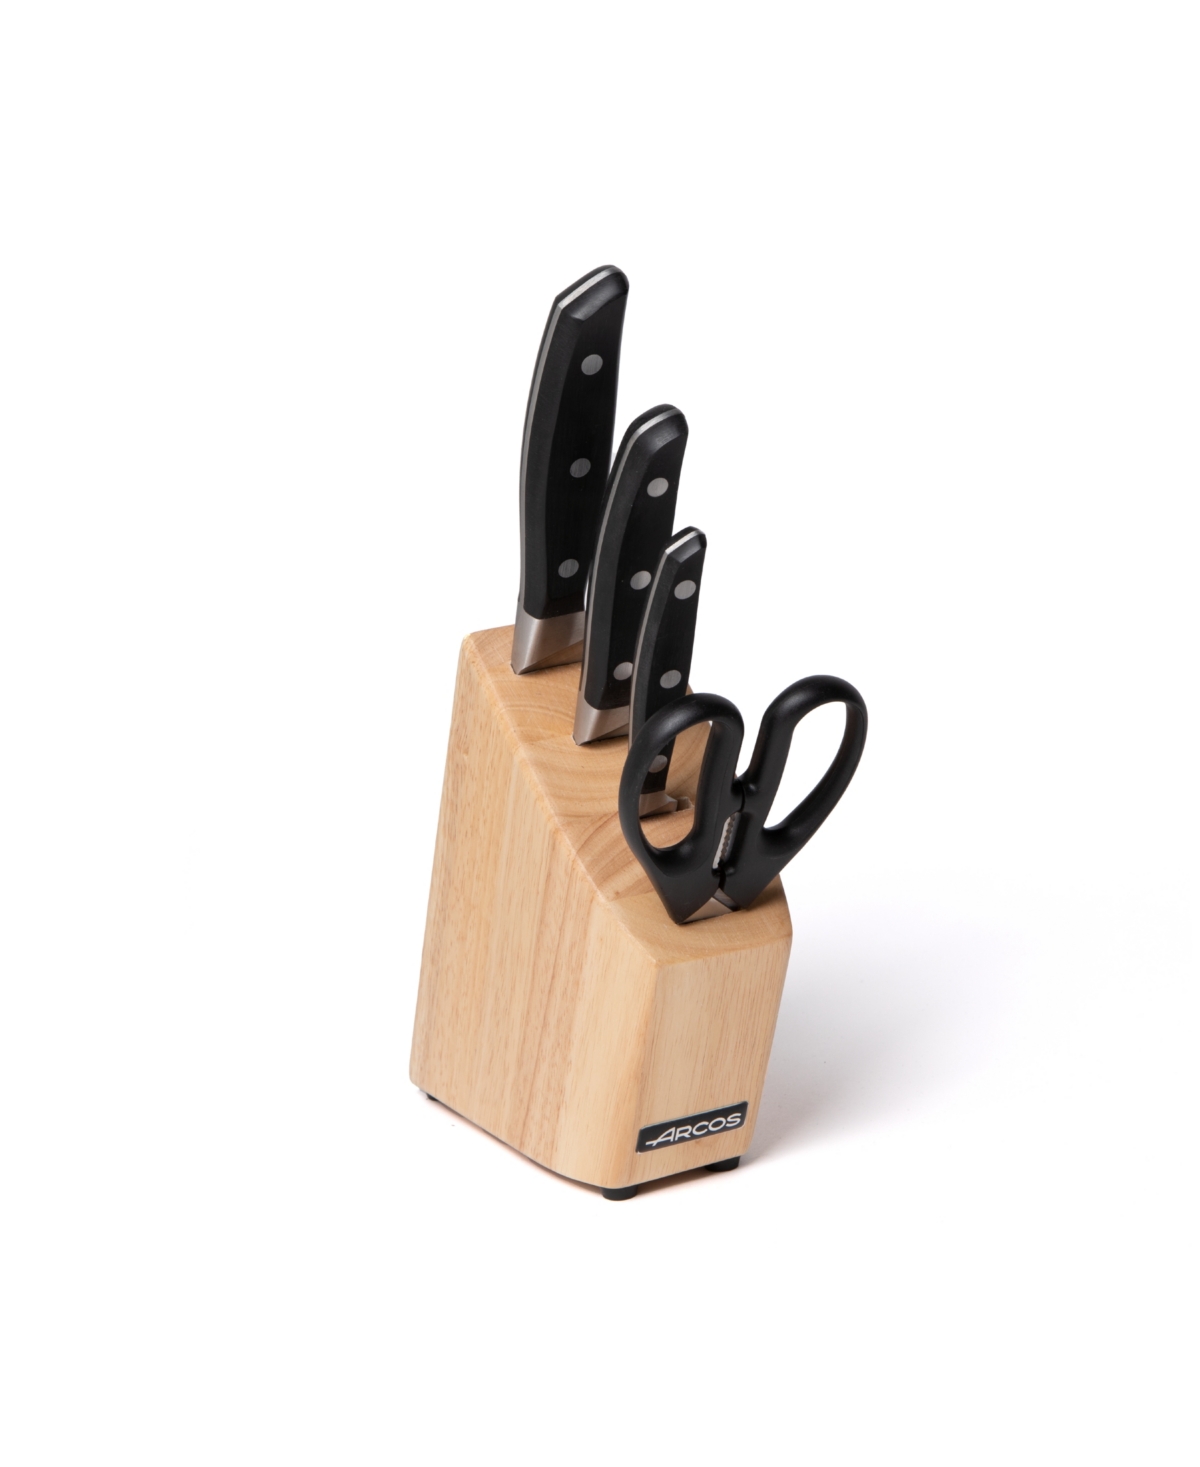 Arcos Manhattan 5 Piece Block Set Cutlery In Black